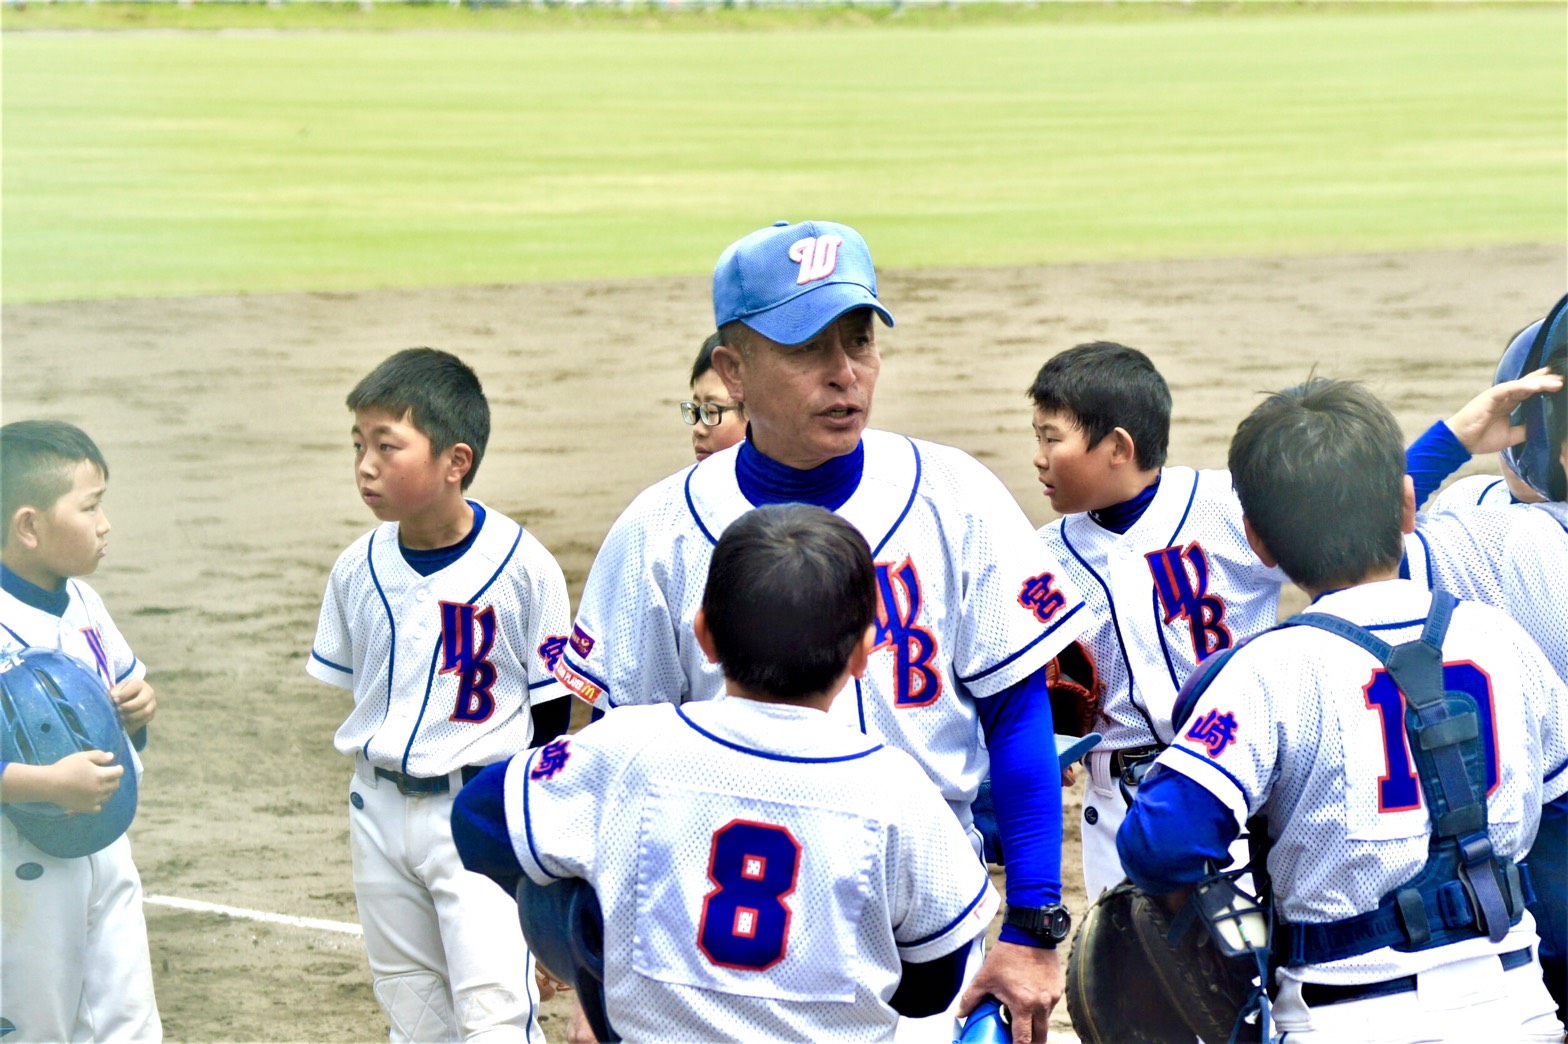 大会 学童 高円宮 全日本 野球 回 39 第 軟式 賜杯 高円宮賜杯第３９回全日本学童軟式野球大会 第２日